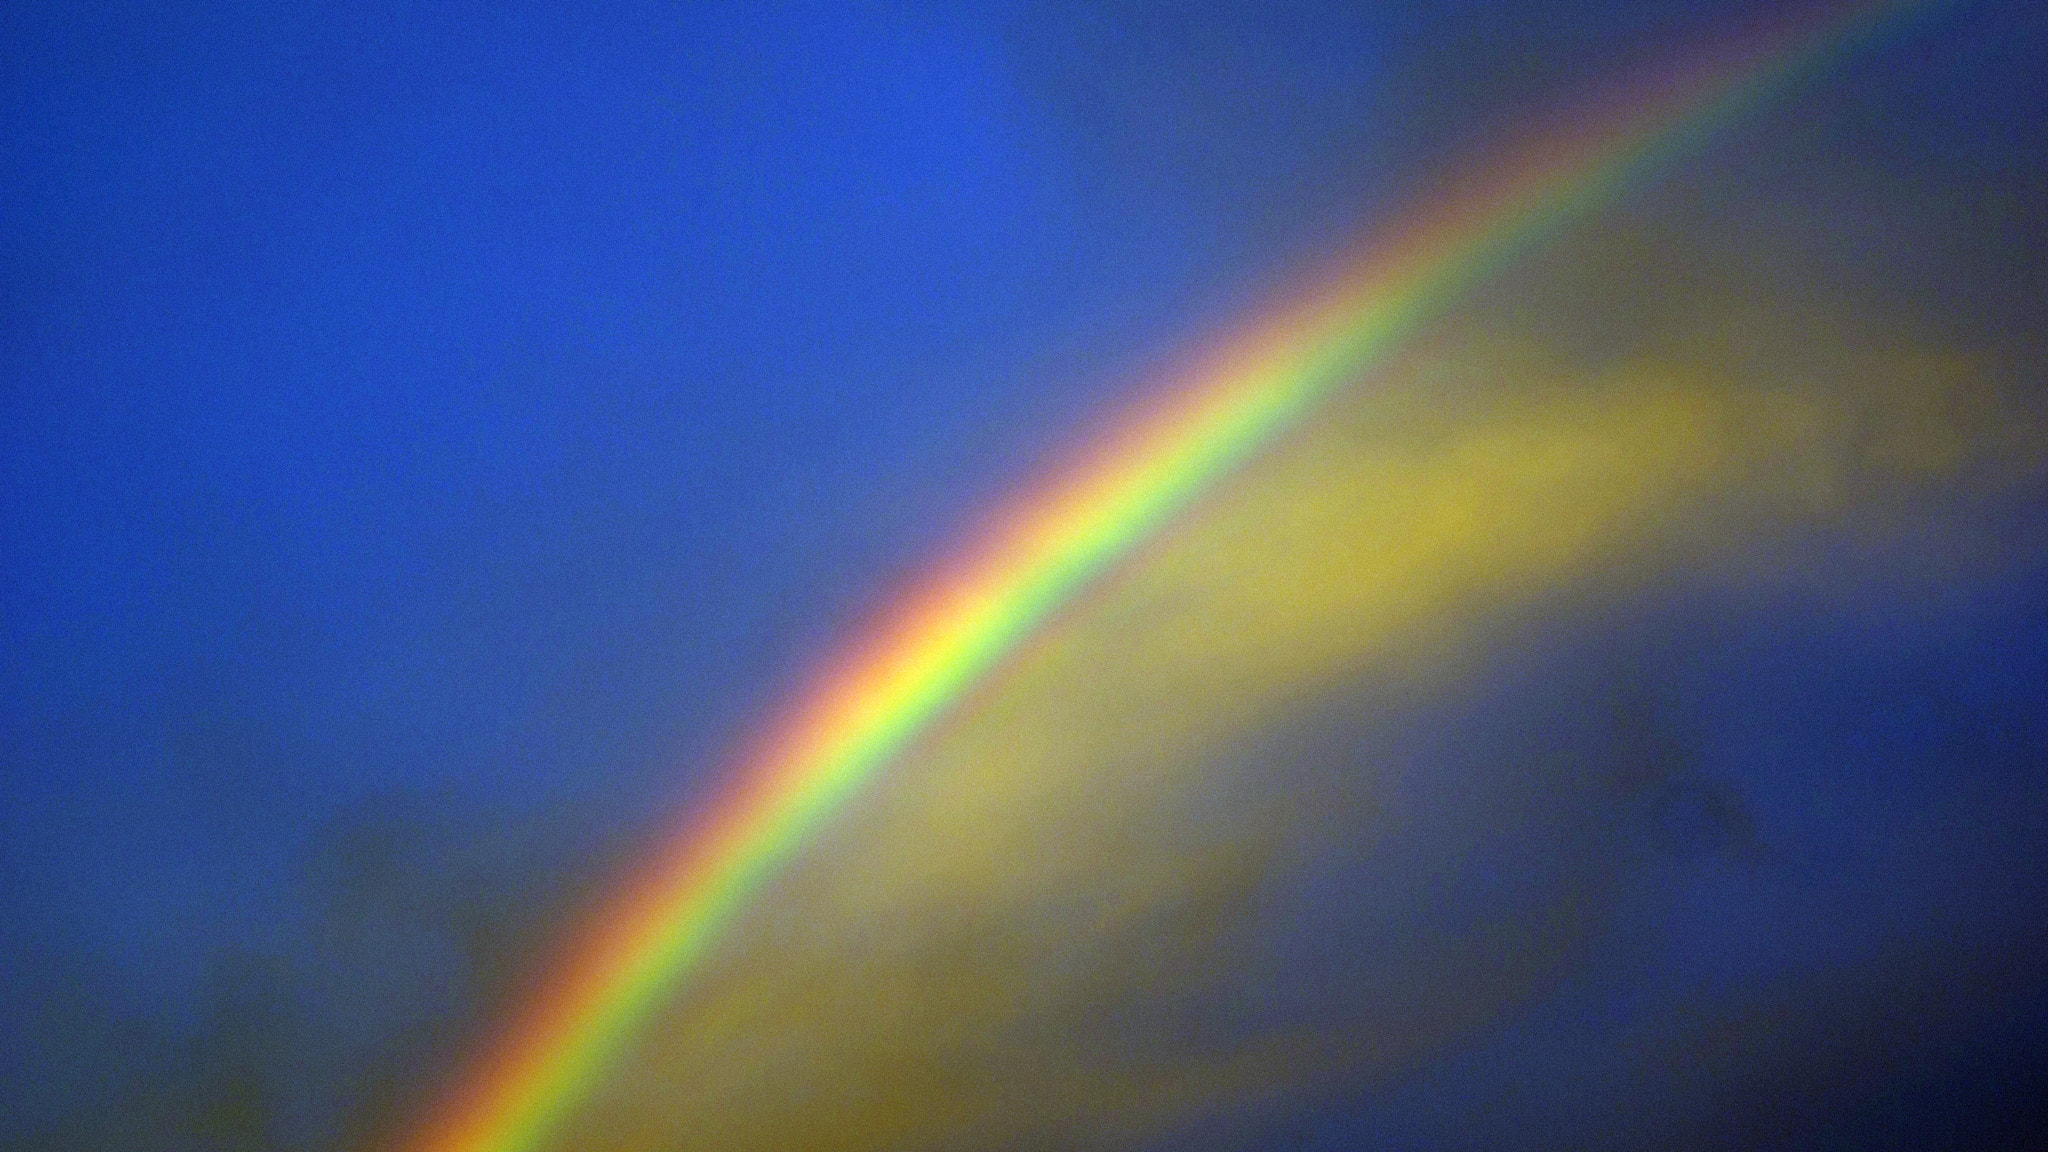 Sony SLT-A77 sample photo. Night sky rainbow a photography